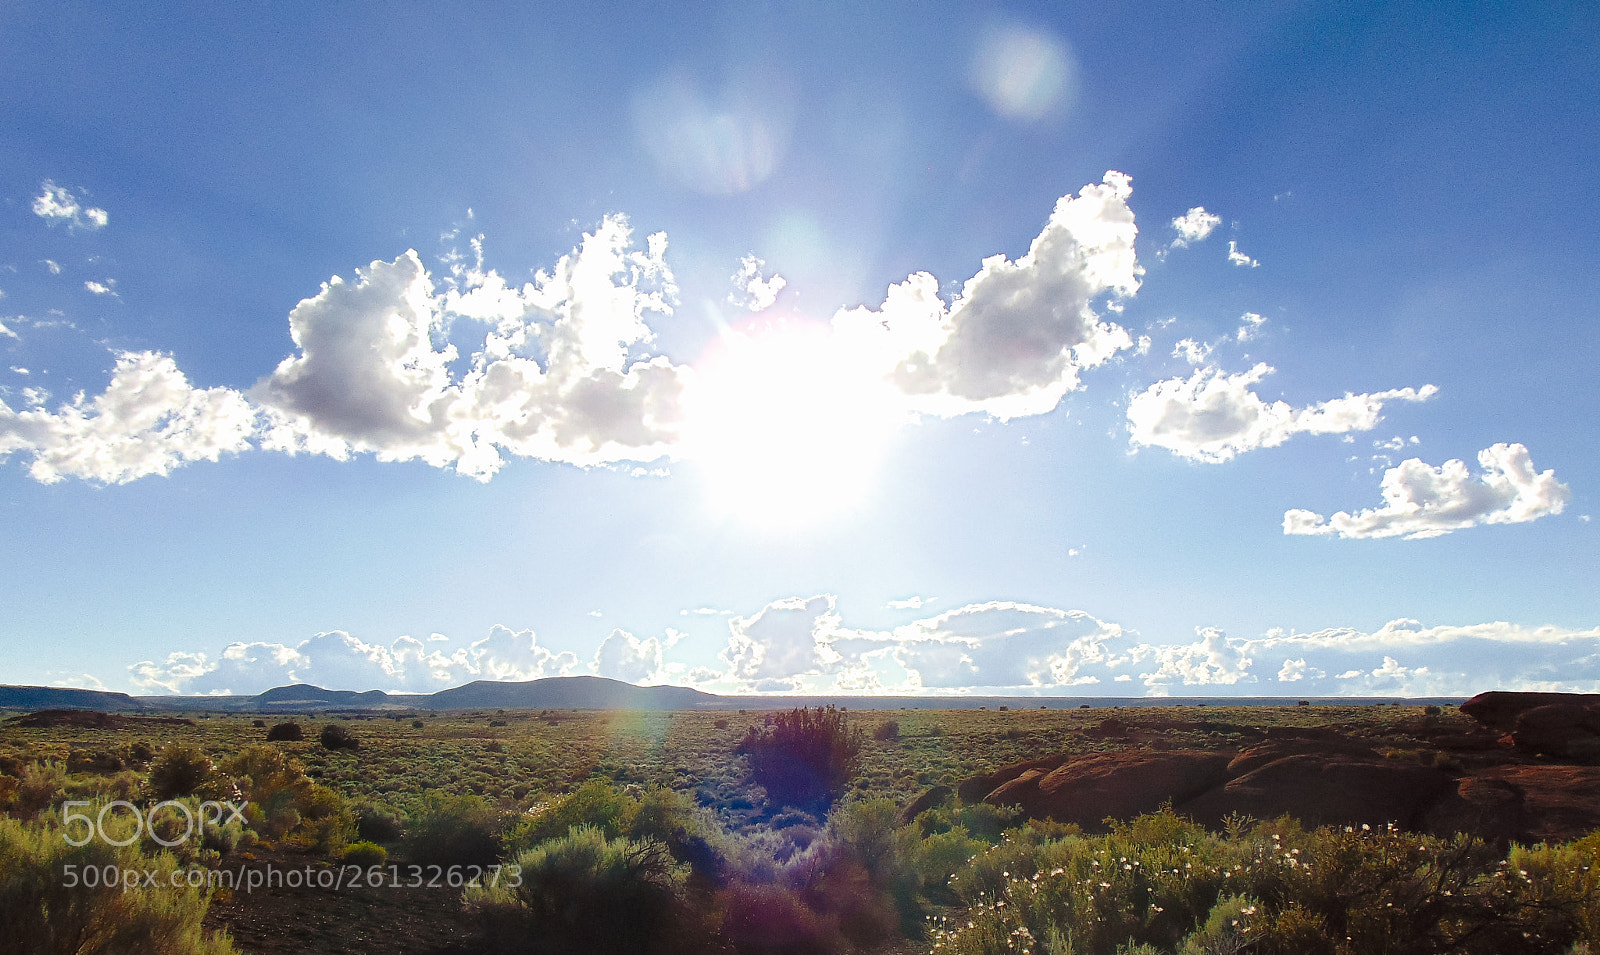 Sony Cyber-shot DSC-H300 sample photo. Sunshine in rural arizona photography